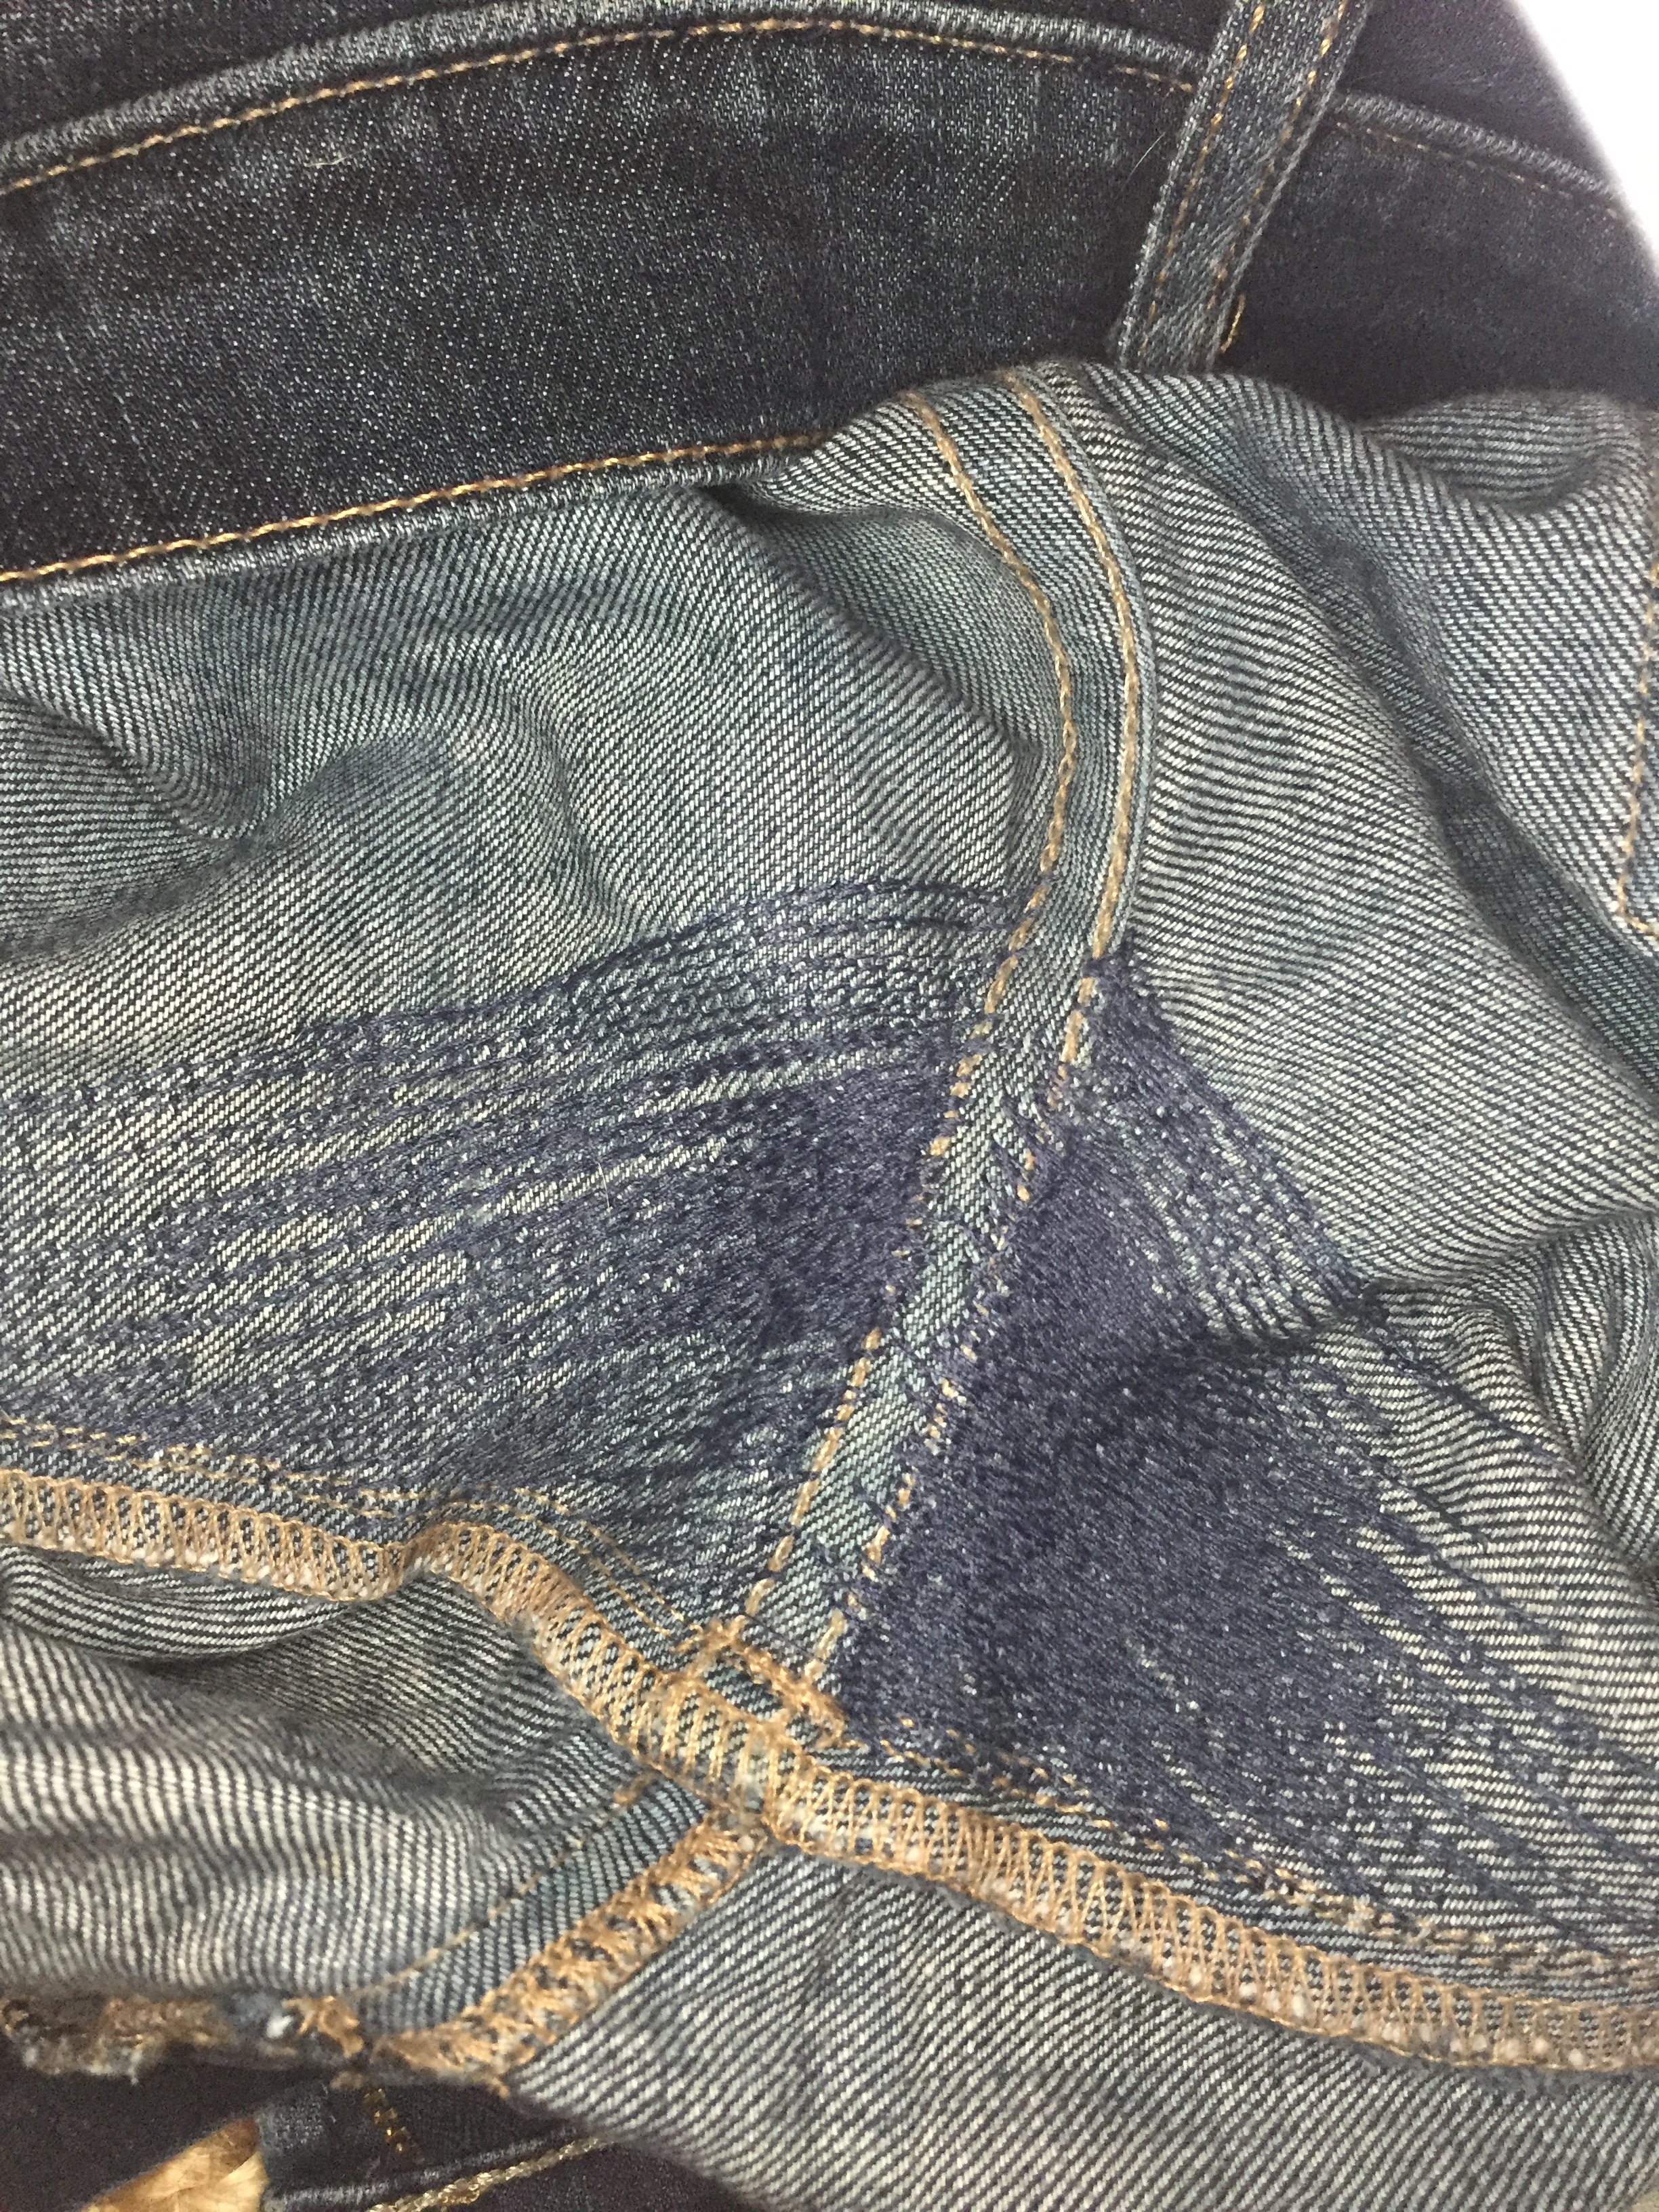 Repaired jeans interior